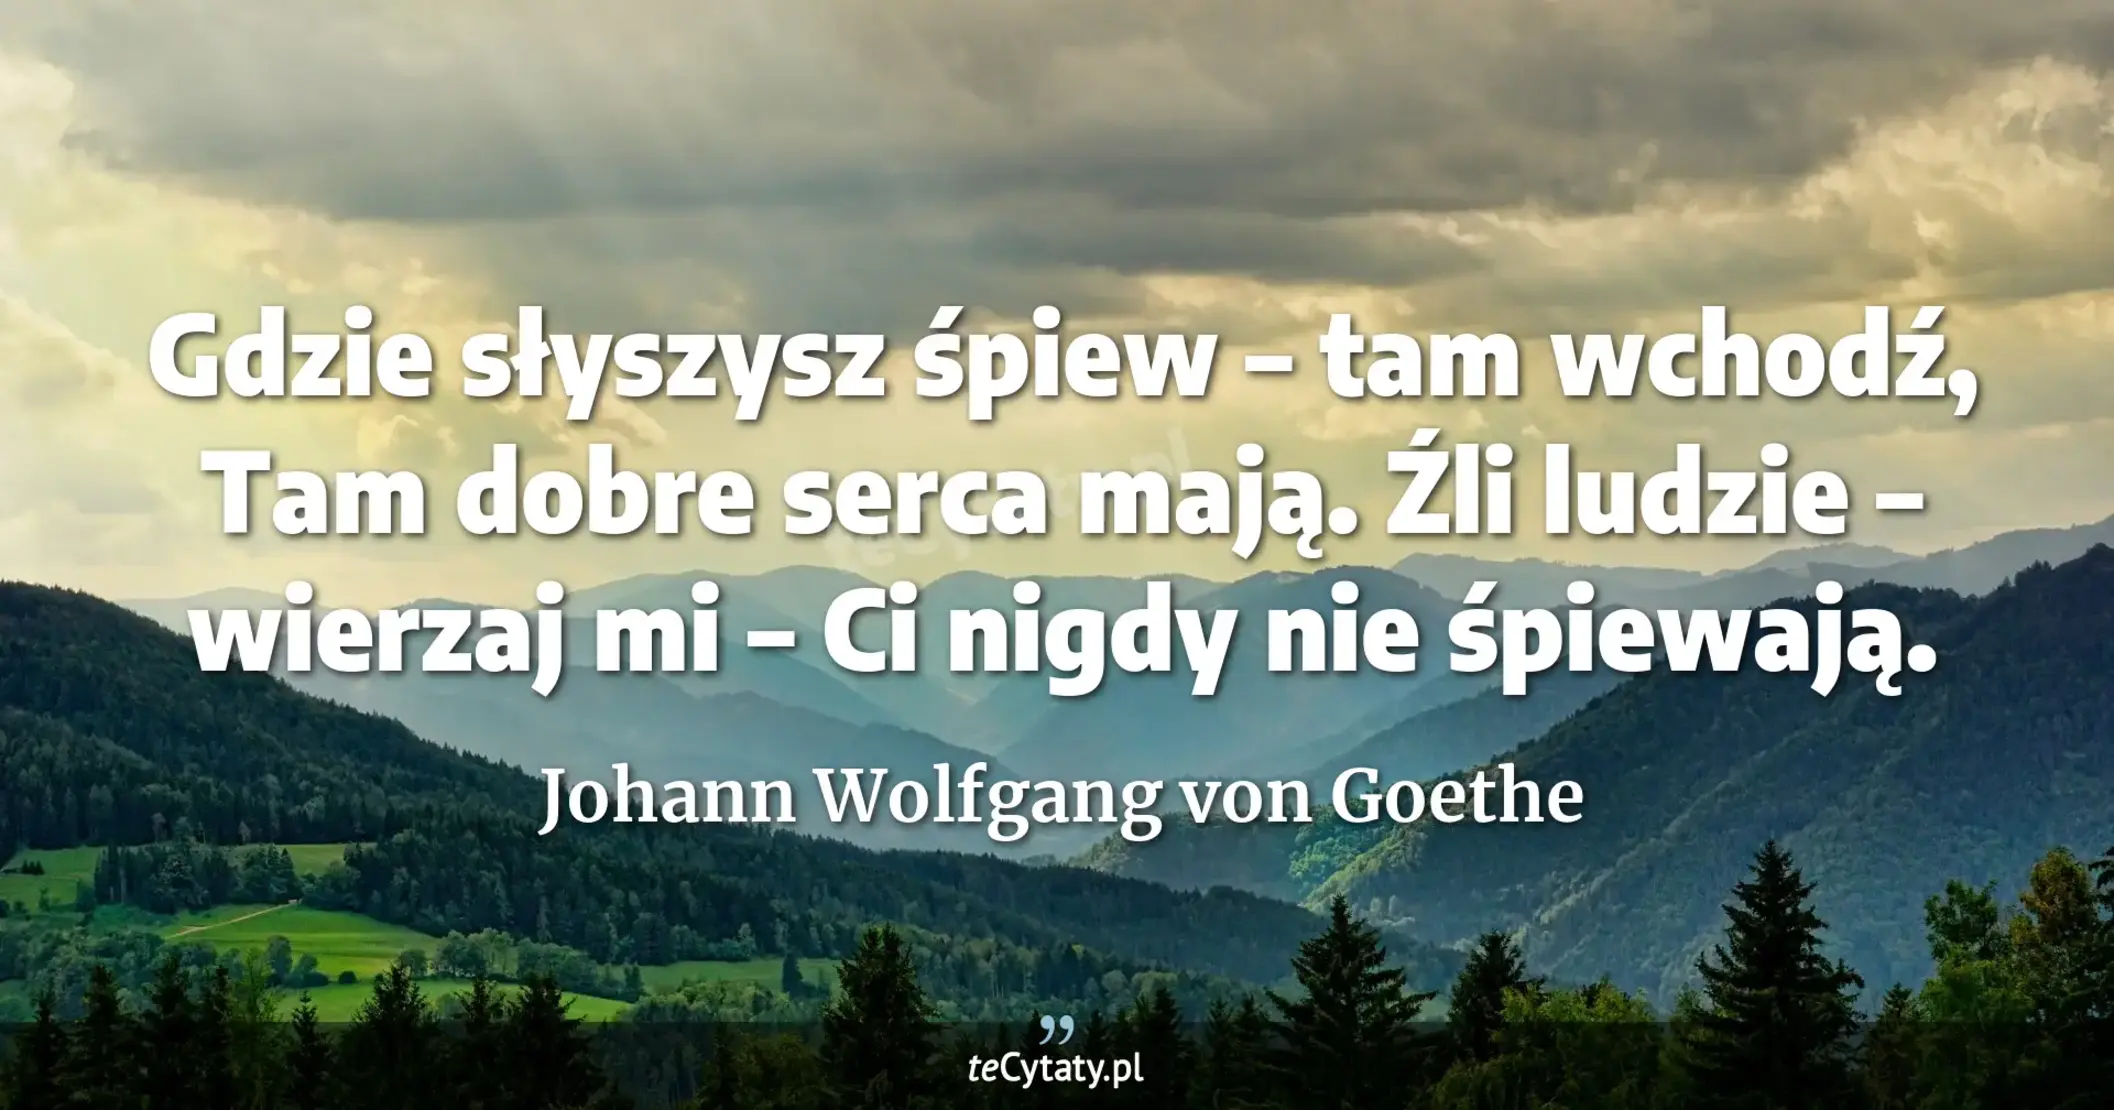 Gdzie słyszysz śpiew – tam wchodź, <br> Tam dobre serca mają. <br> Źli ludzie – wierzaj mi – <br> Ci nigdy nie śpiewają. - Johann Wolfgang von Goethe